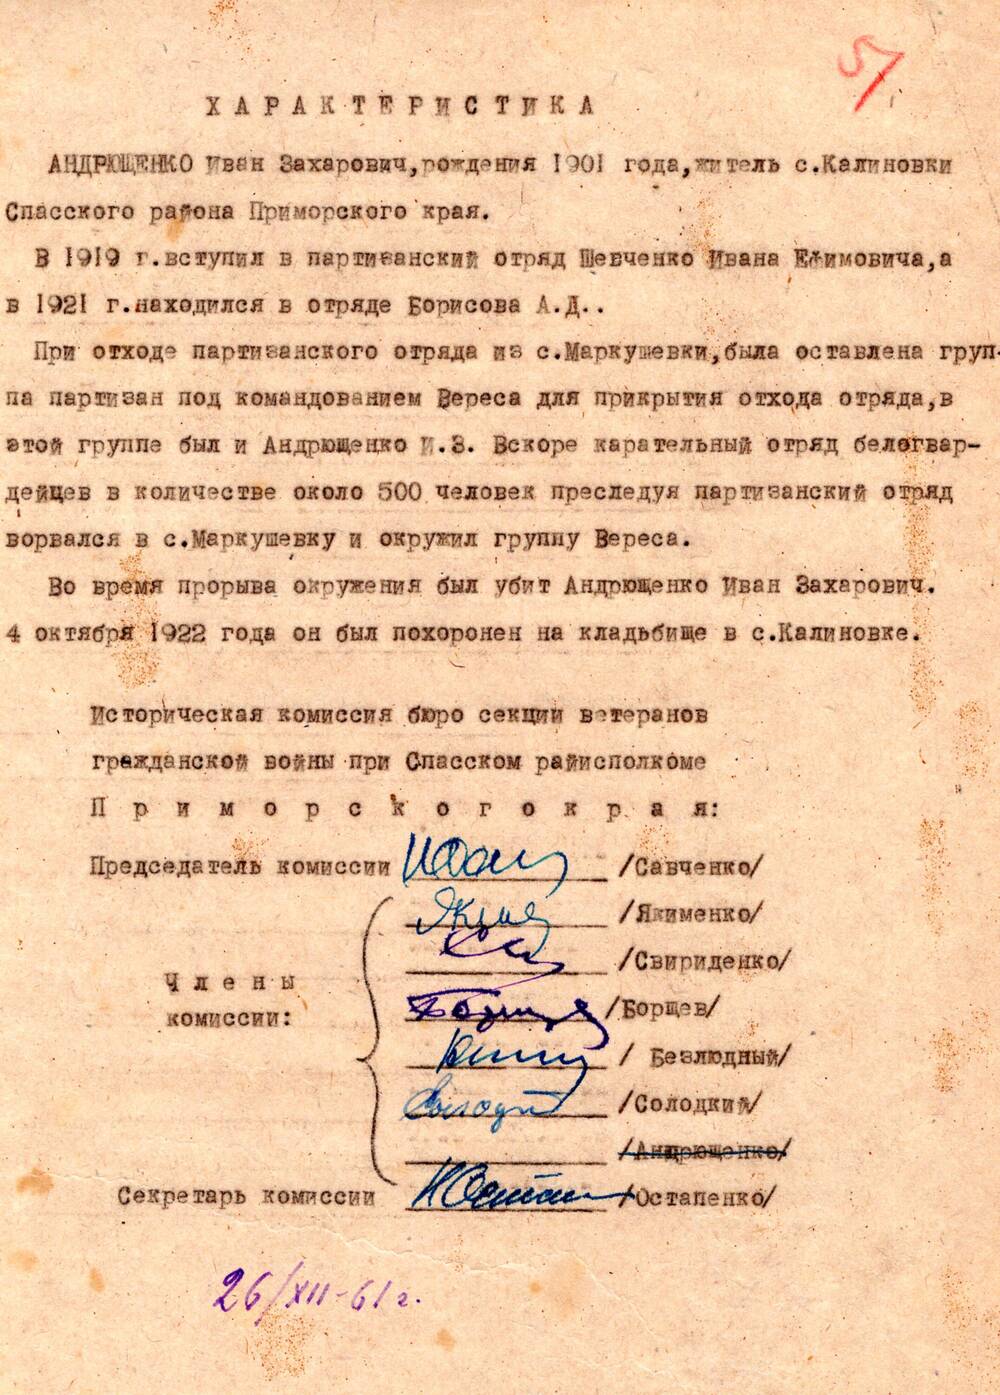 Документы из личного дела участника гражданской войны на Дальнем Востоке Андрющенко Ивана Захаровича